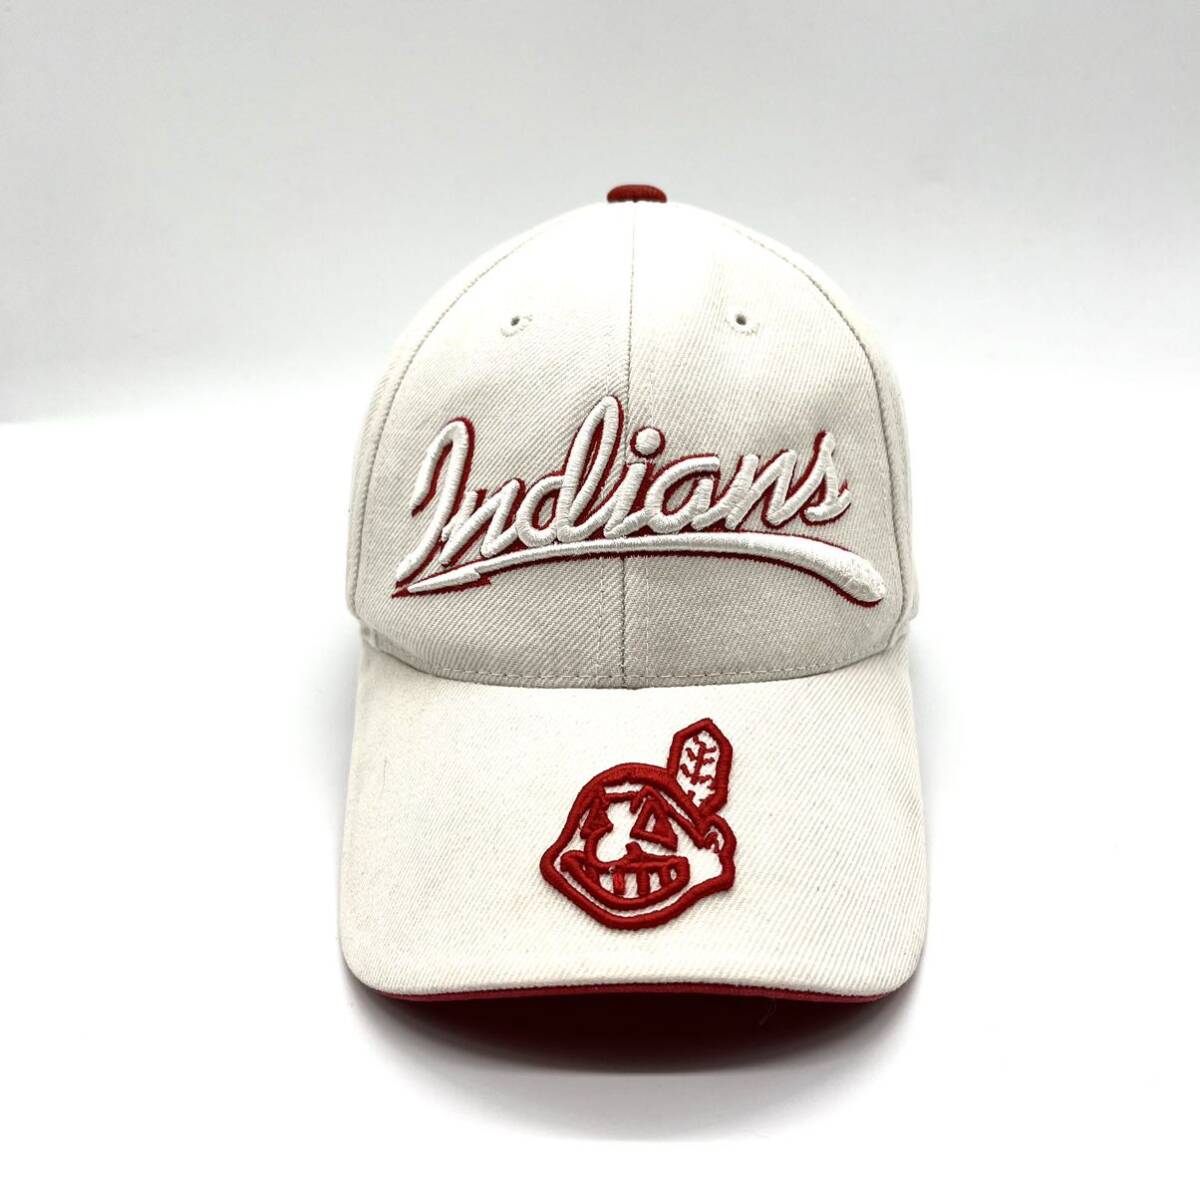 【90s〜】MLB インディアンス 刺繍ロゴキャップ 6パネル ベルクロバック メジャーリーグ オフィシャル当時物 ヴィンテージキャップ 帽子_画像1